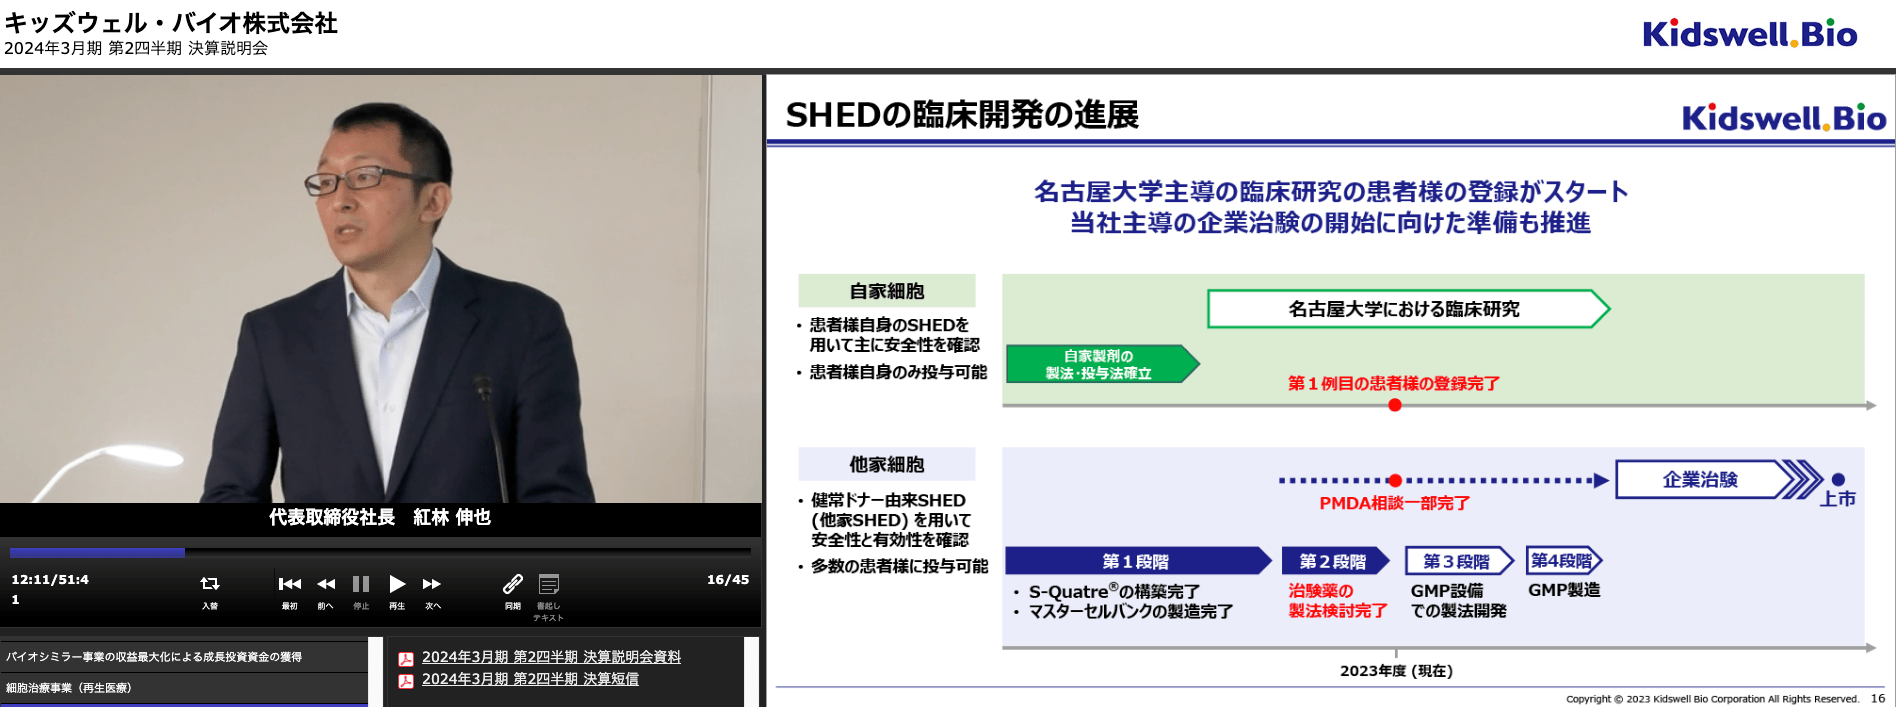 キッズウェル・バイオ株式会社 2024年3月期 第2四半期決算説明会動画 SHEDの臨床開発の進展